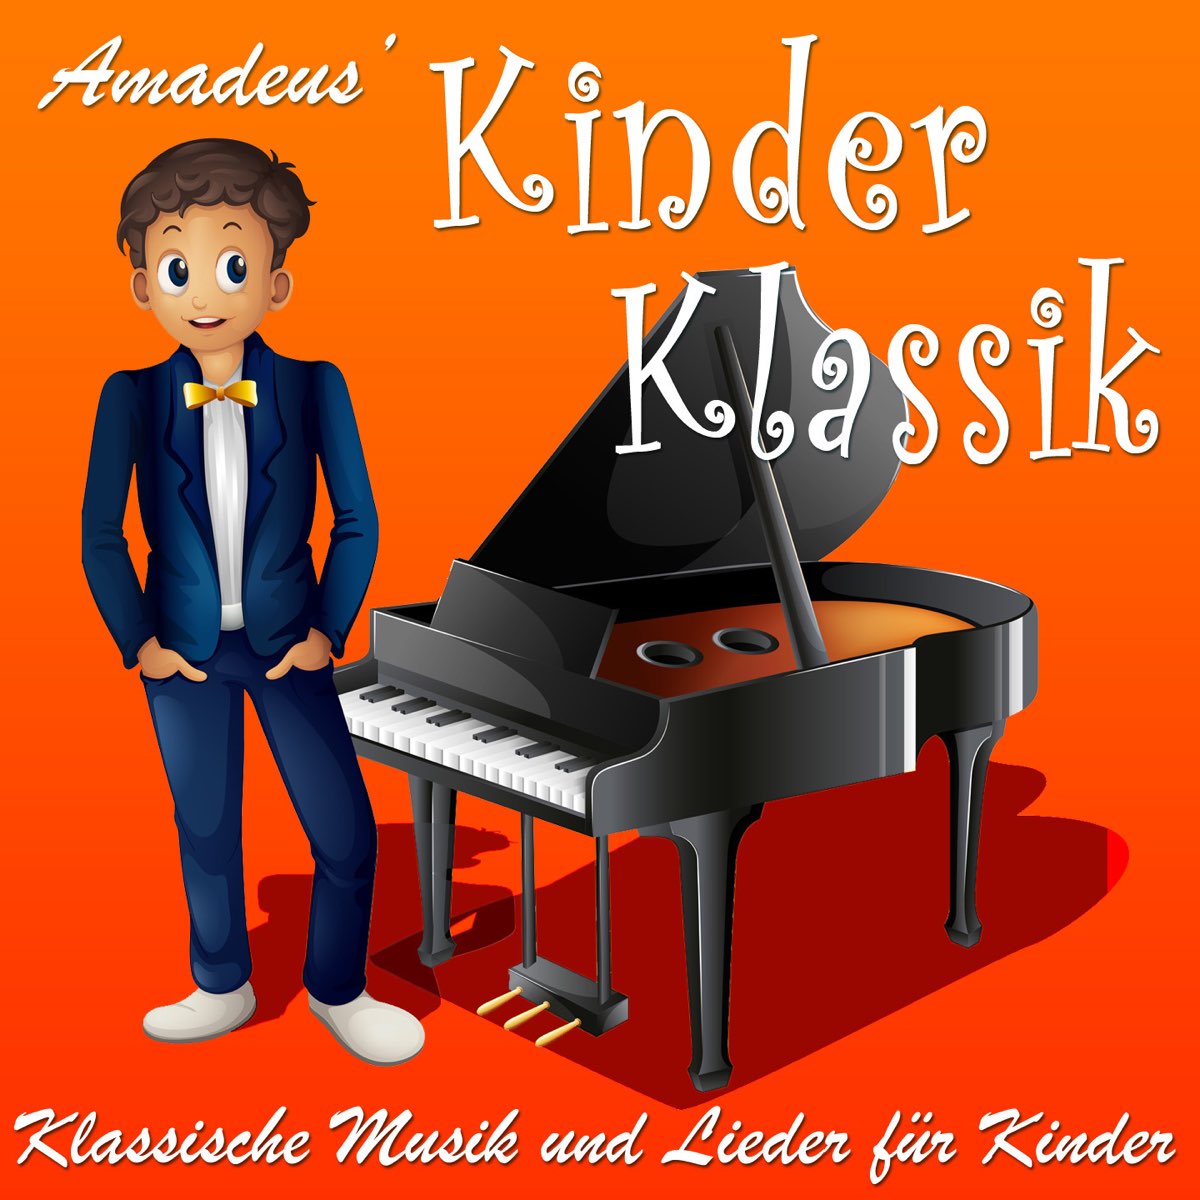 Klassische Musik und Lieder für Kinder by Amadeus Kinder Klassik on Apple  Music